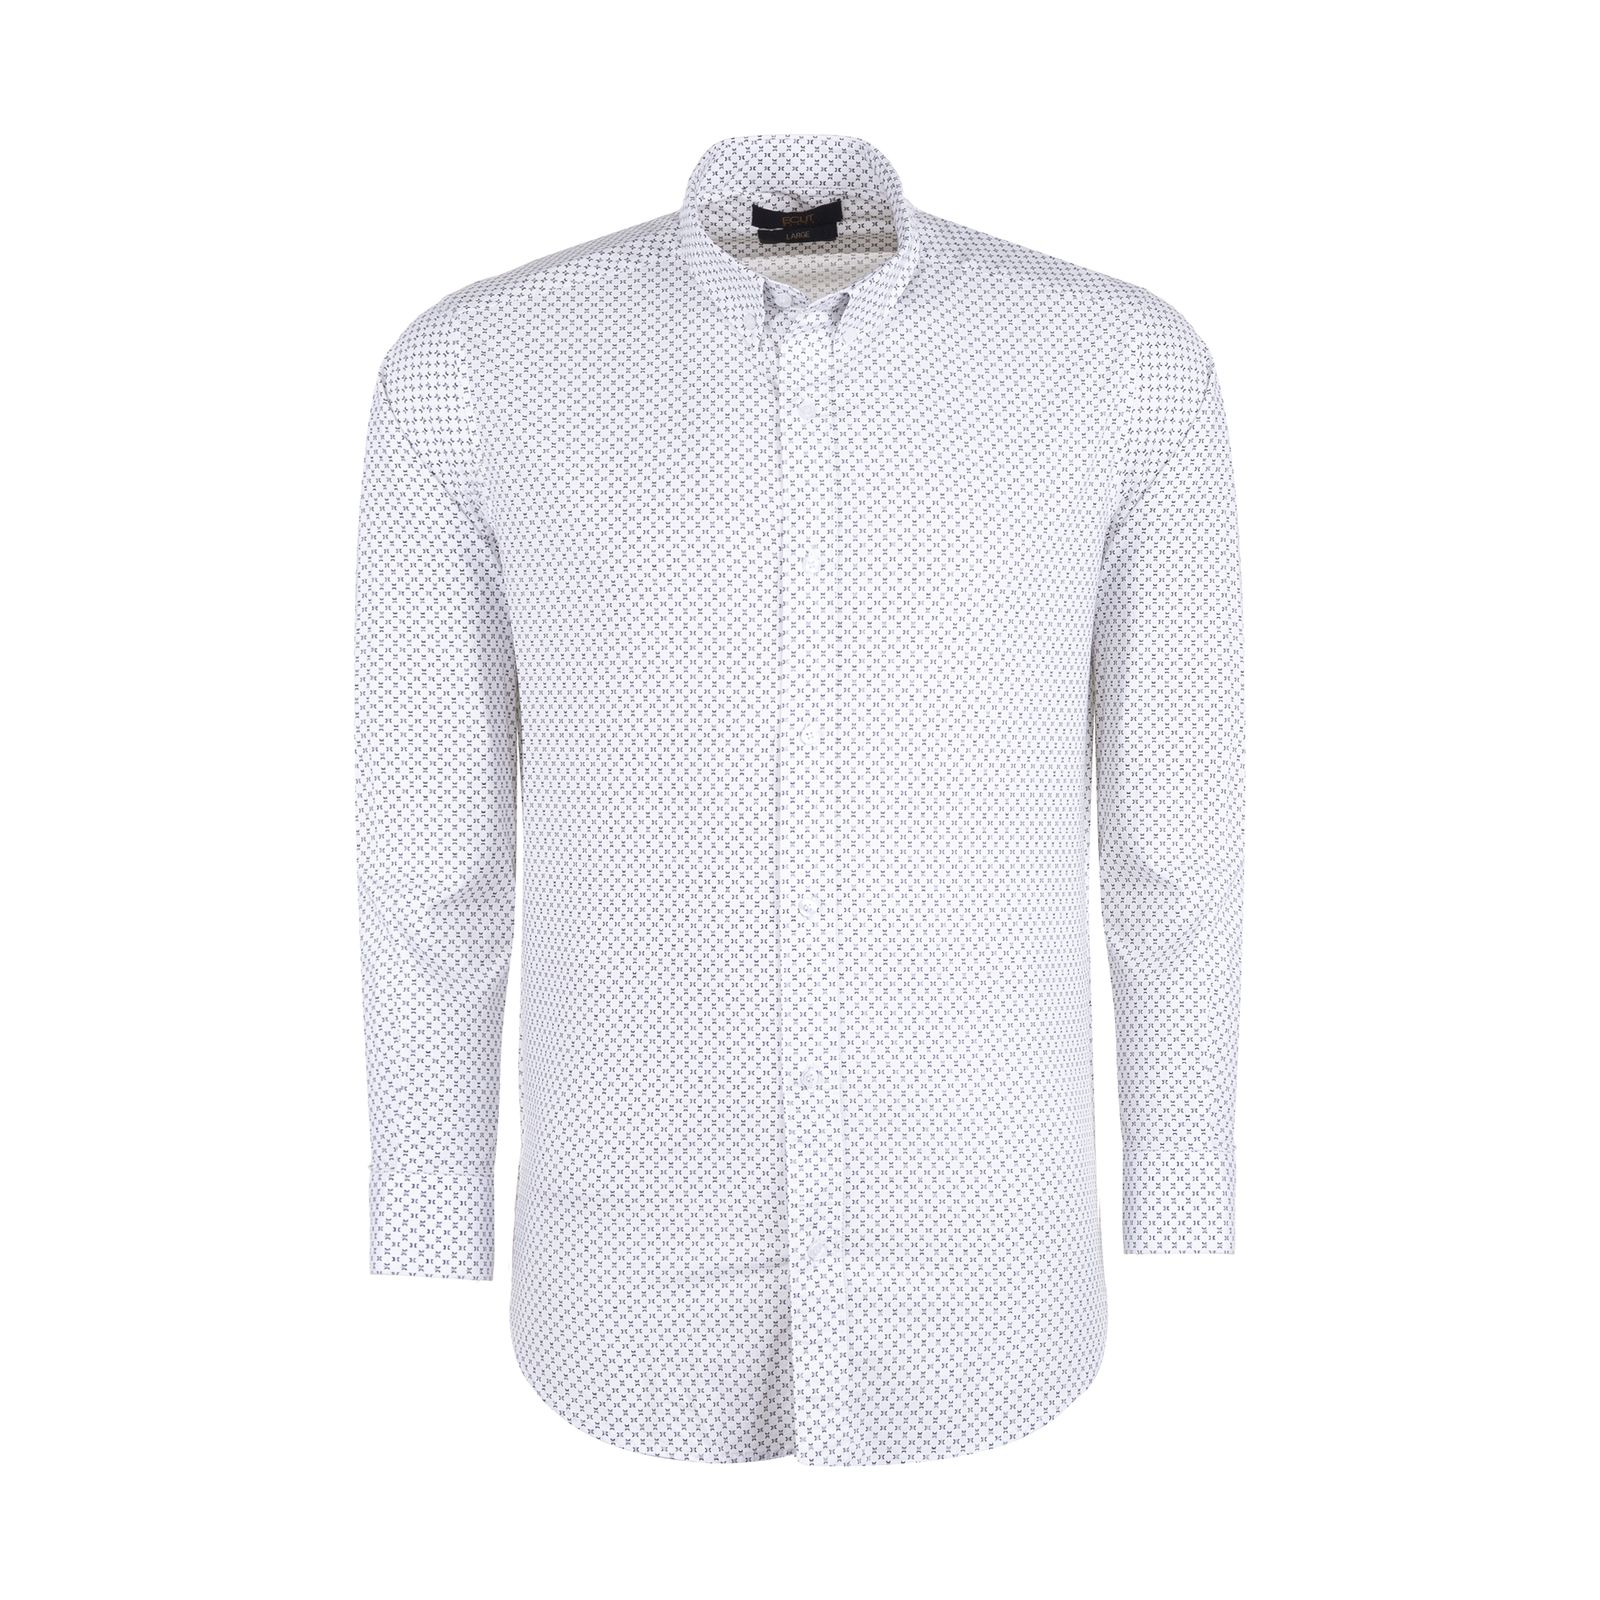 پیراهن آستین بلند مردانه ایکات مدل PST1152395 رنگ سفید -  - 1